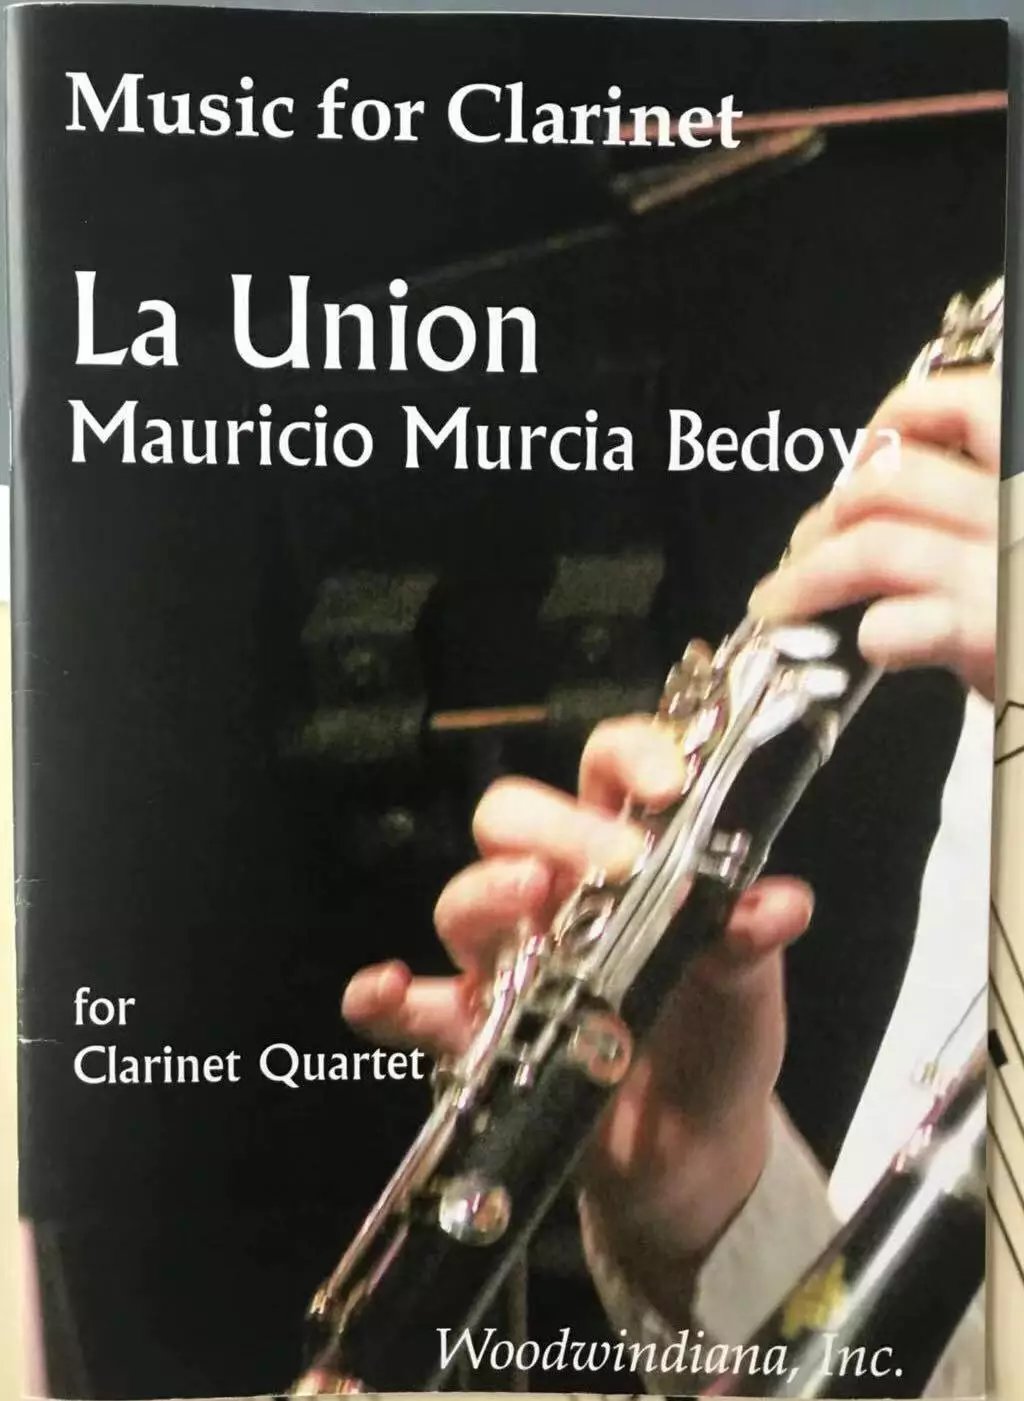 毛里西奥 贝多亚 拉乌尼翁 单簧管四重奏 Woodwindiana原版乐谱书 Mauricio Murcia Bedoya  La Union Clarinet Quartet  WE 1005